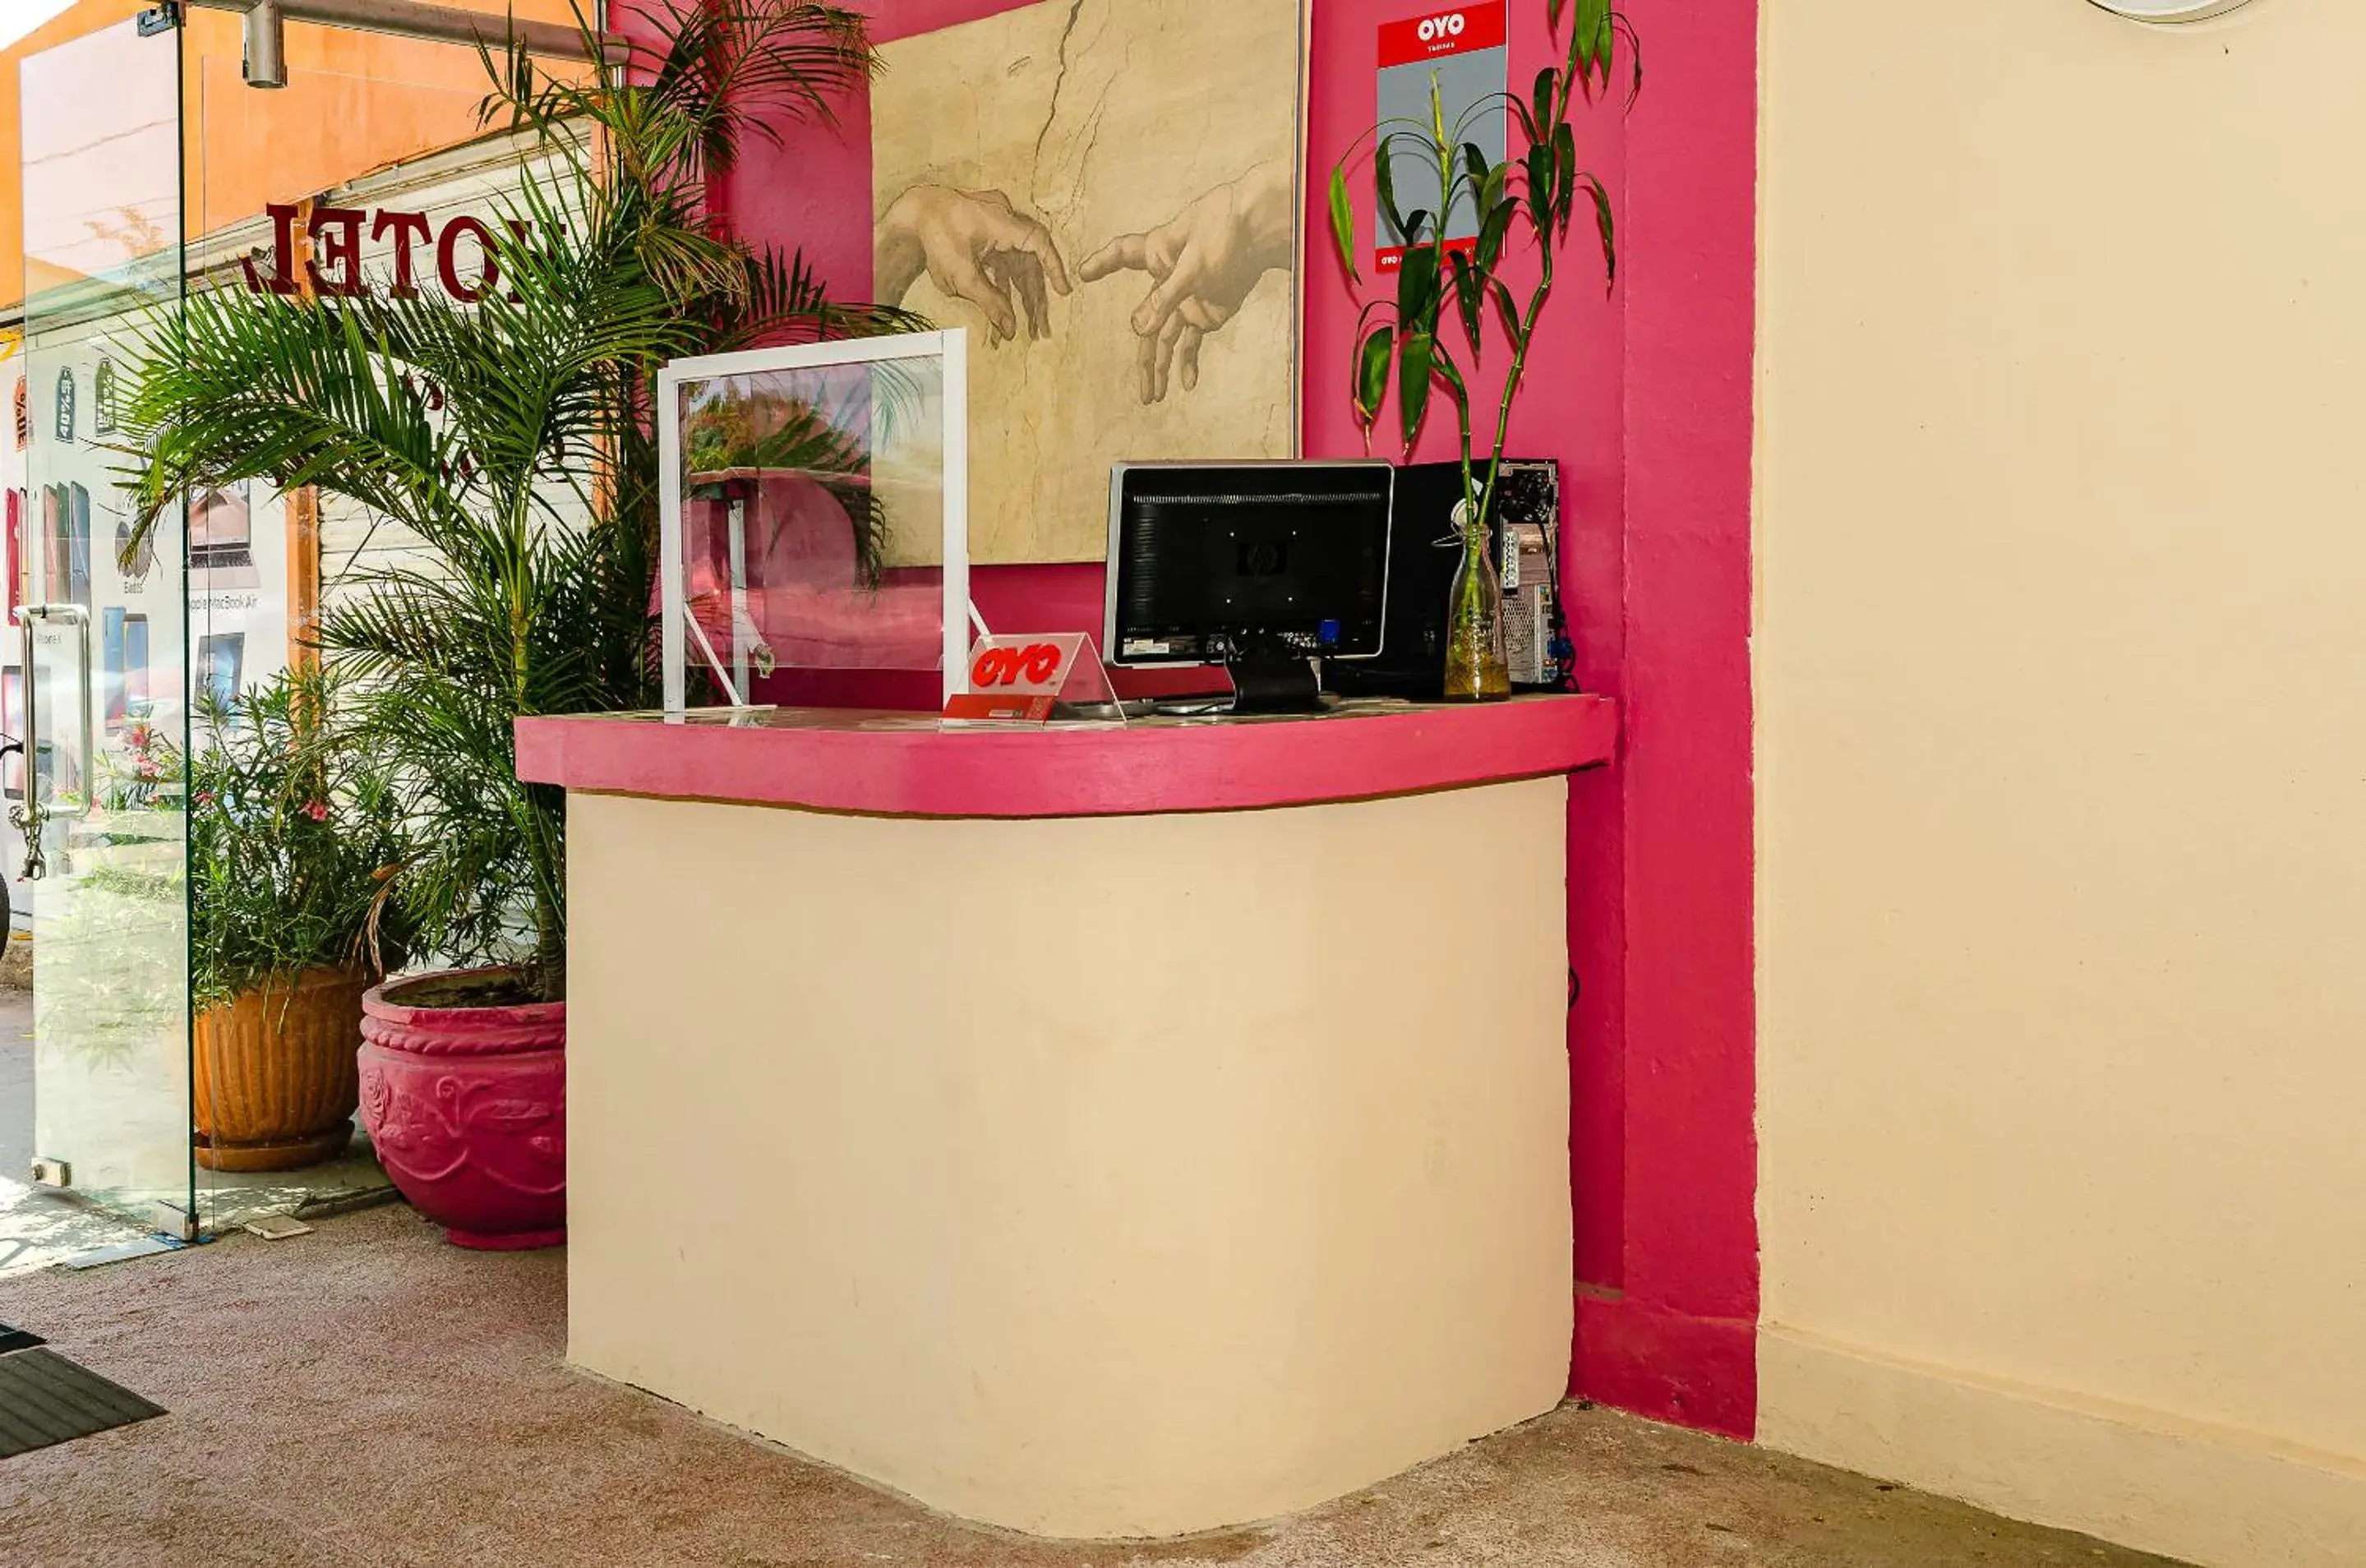 Lobby or reception in OYO Hotel Cabo Del Sur, Cabo San Lucas